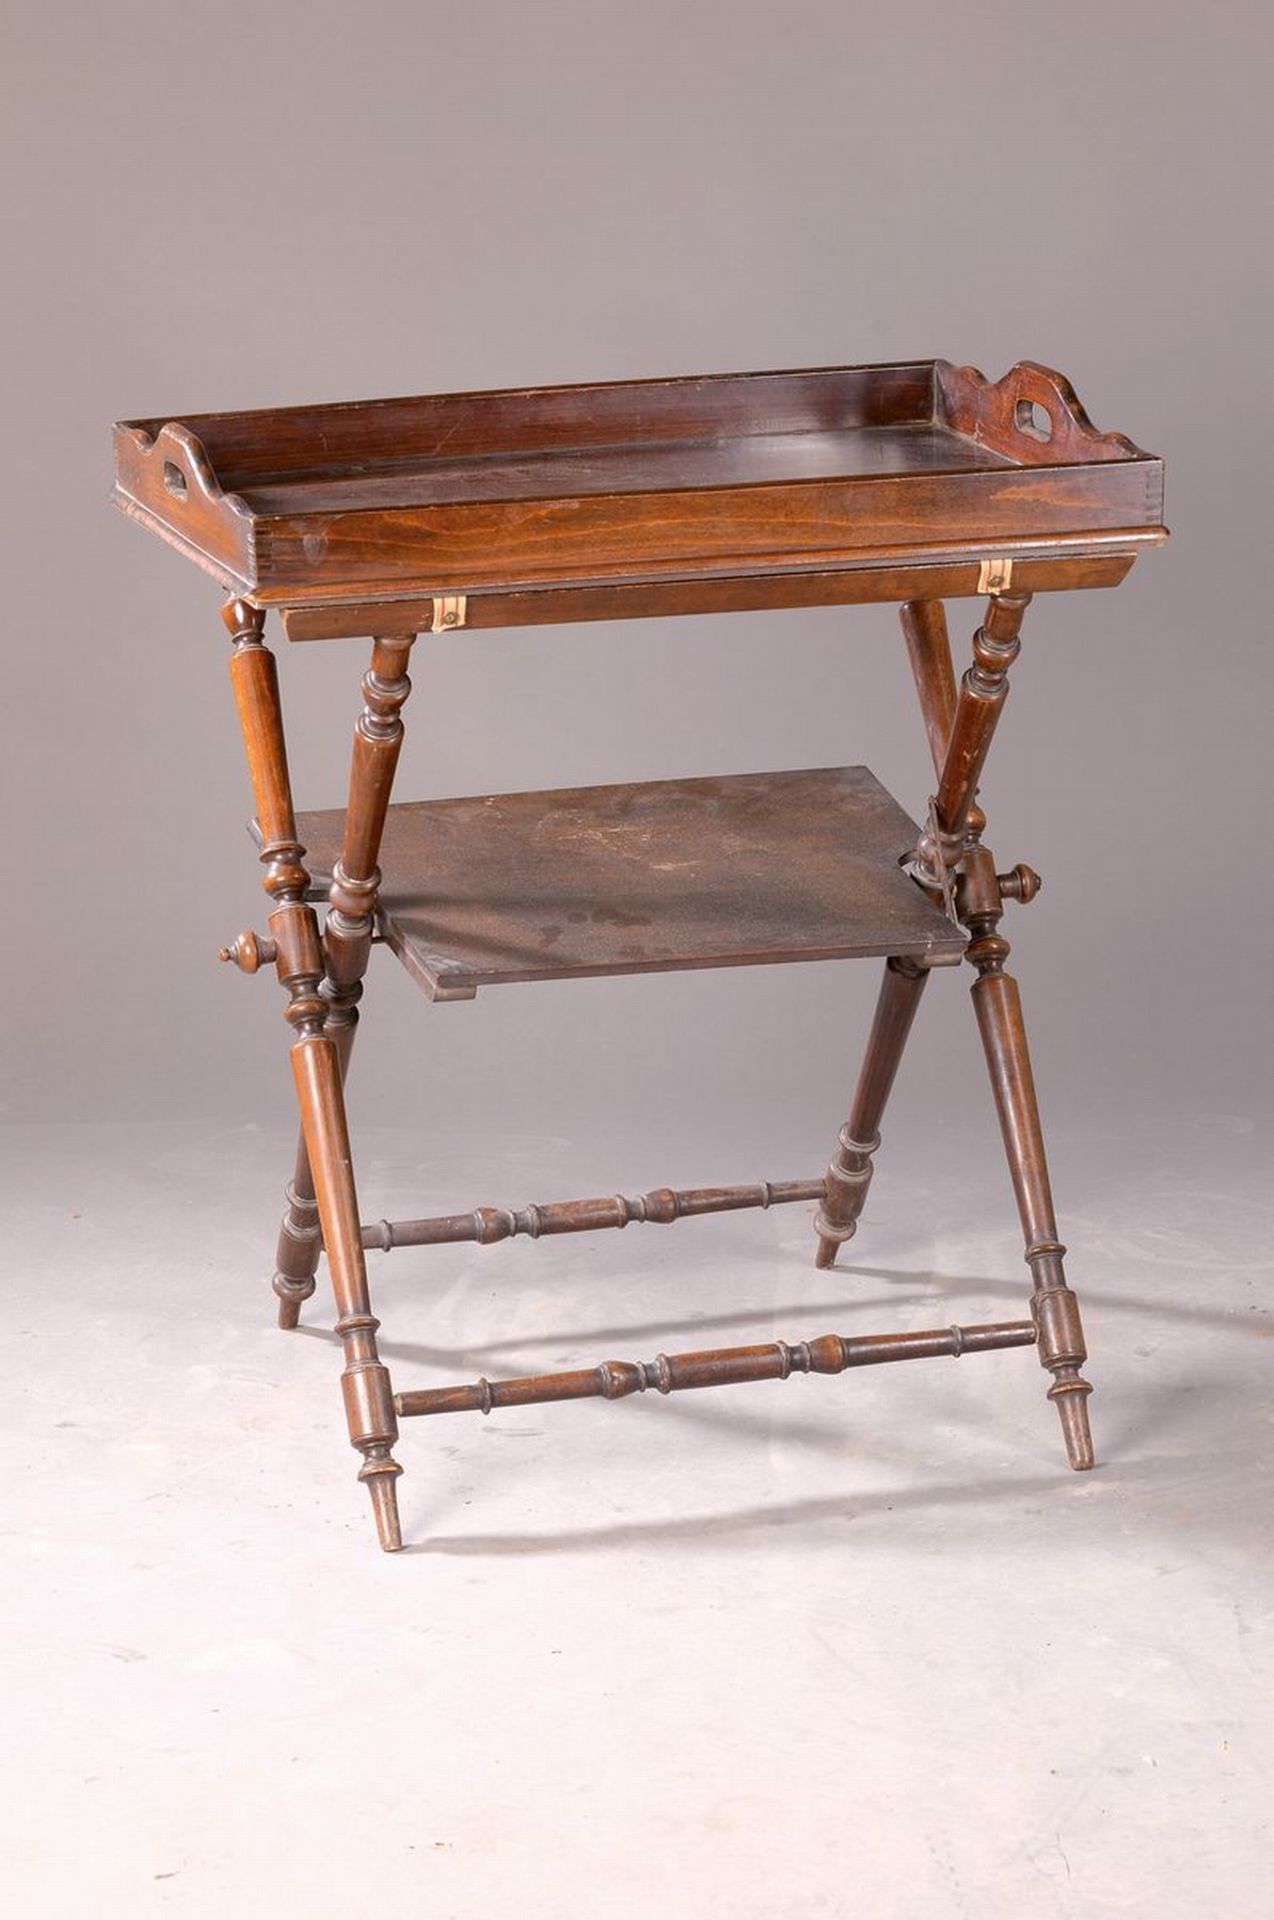 Tablett-Tisch, England, um 1880/90,  Buche, dunkel